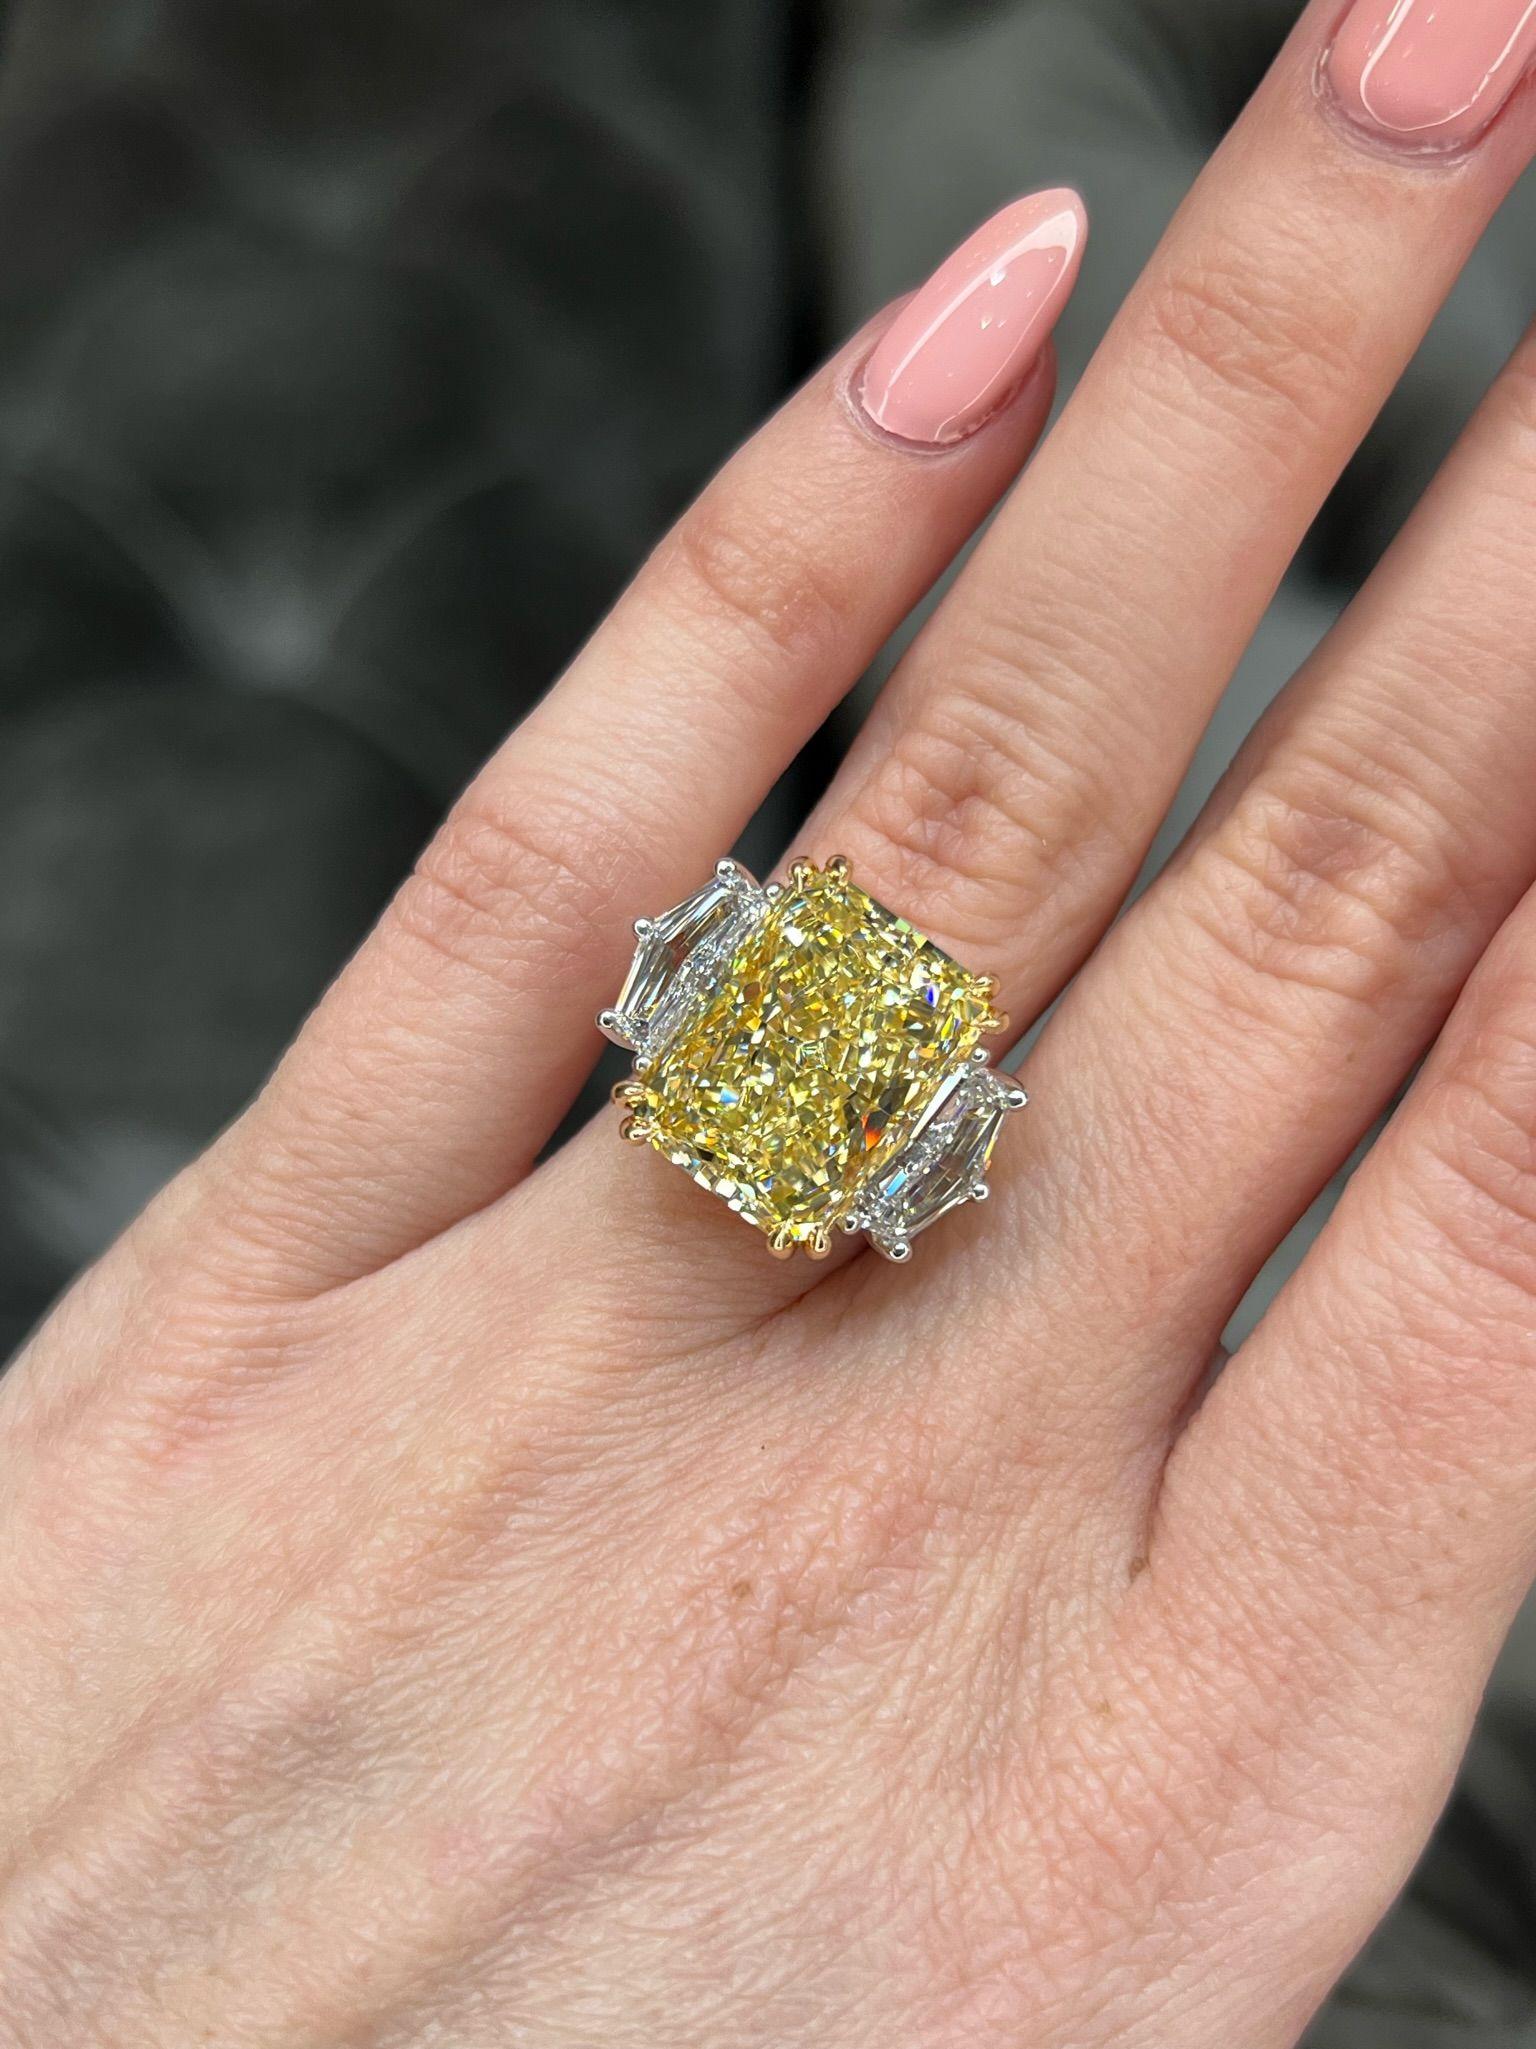 David Rosenberg 11.18 Radiant Fancy Yellow VVS2 GIA Diamond Engagement Ring For Sale 8